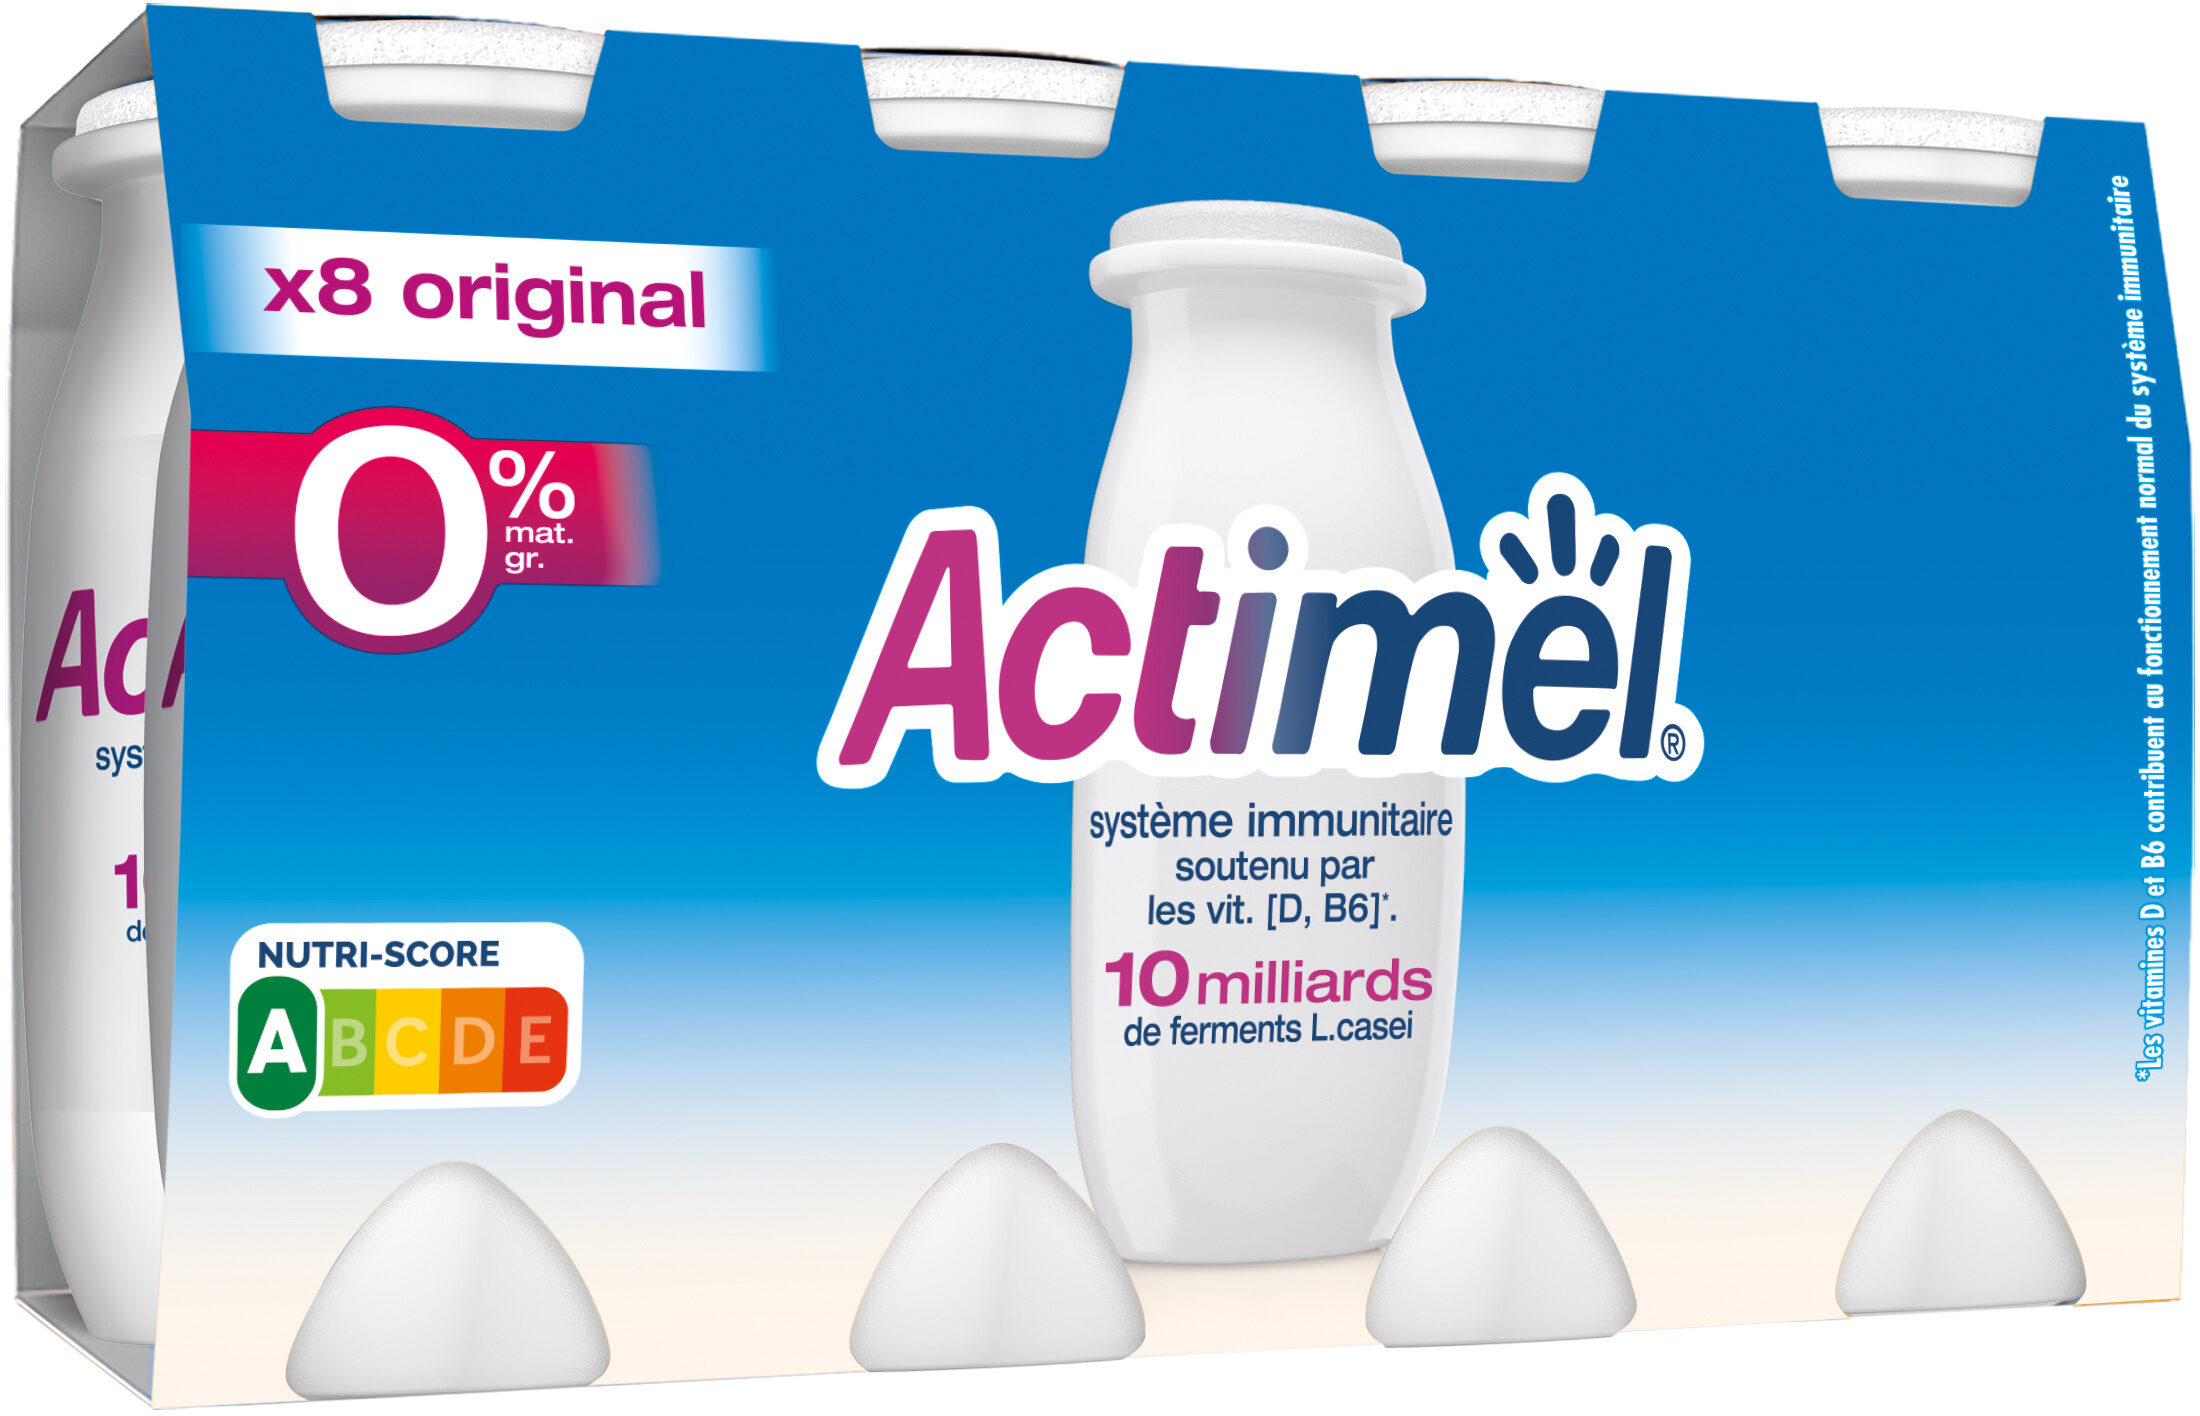 Actimel 0% de mg 100 g x 8 original - Produkt - fr